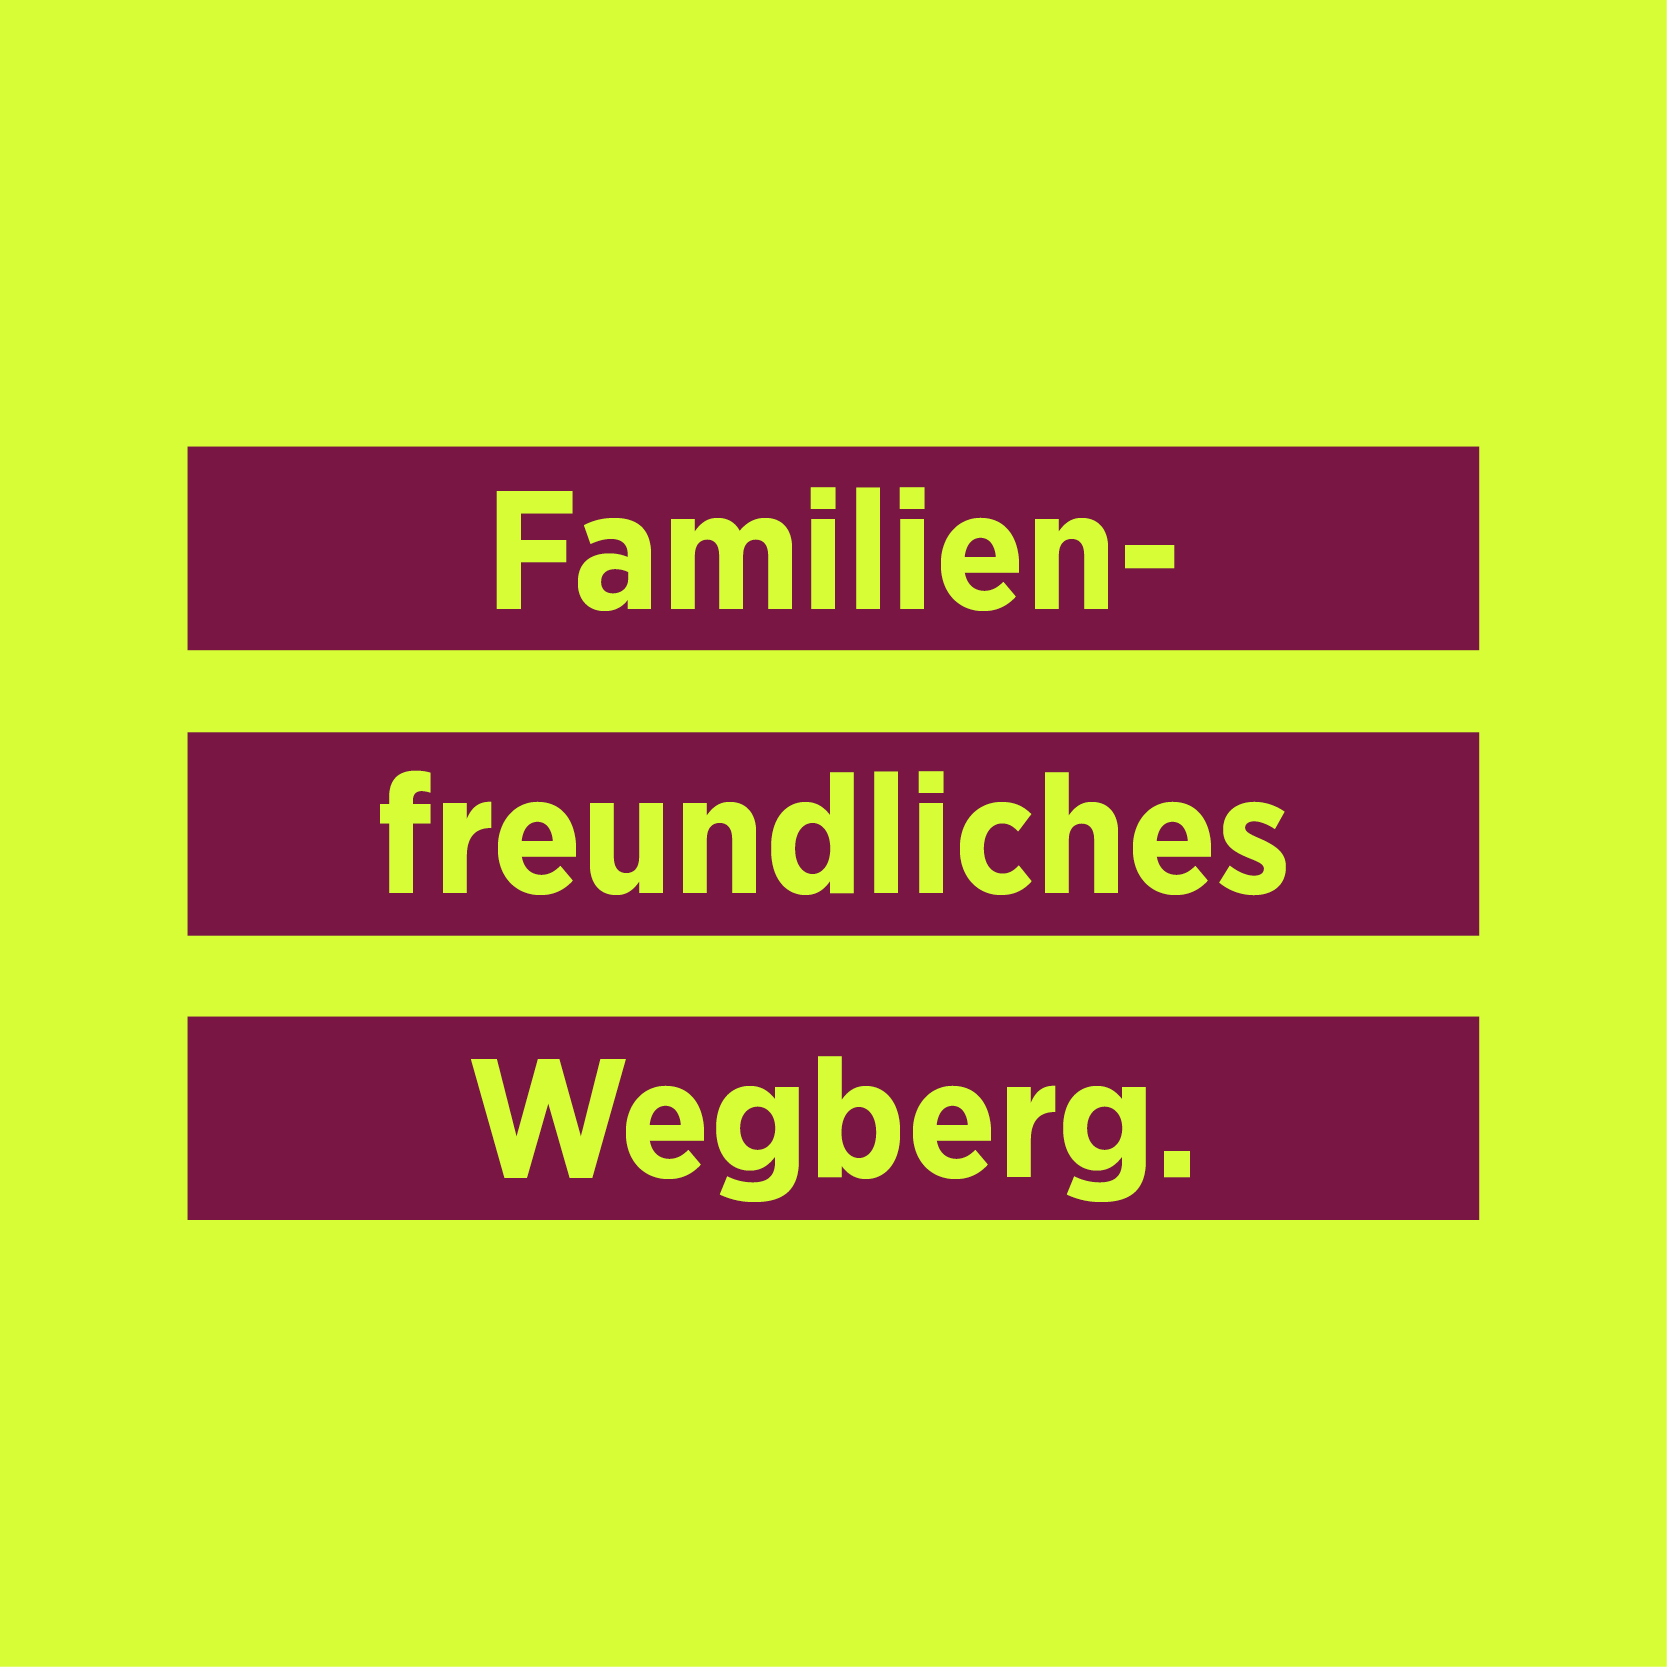 Familienfreundliches Wegberg